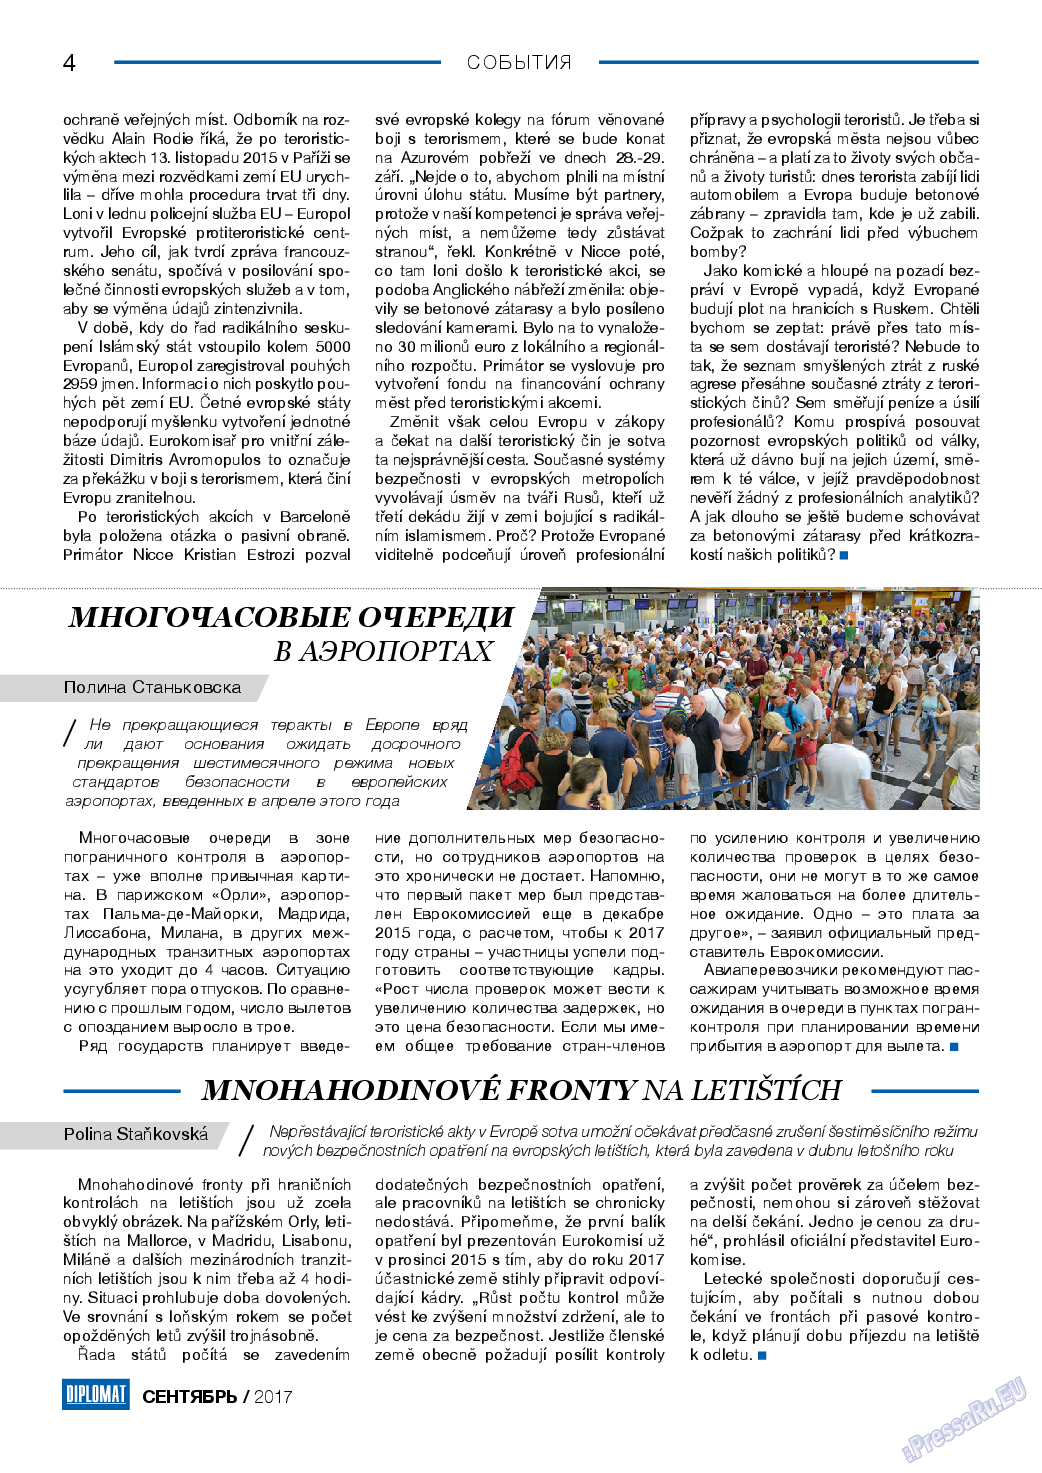 Diplomat, газета. 2017 №96 стр.4